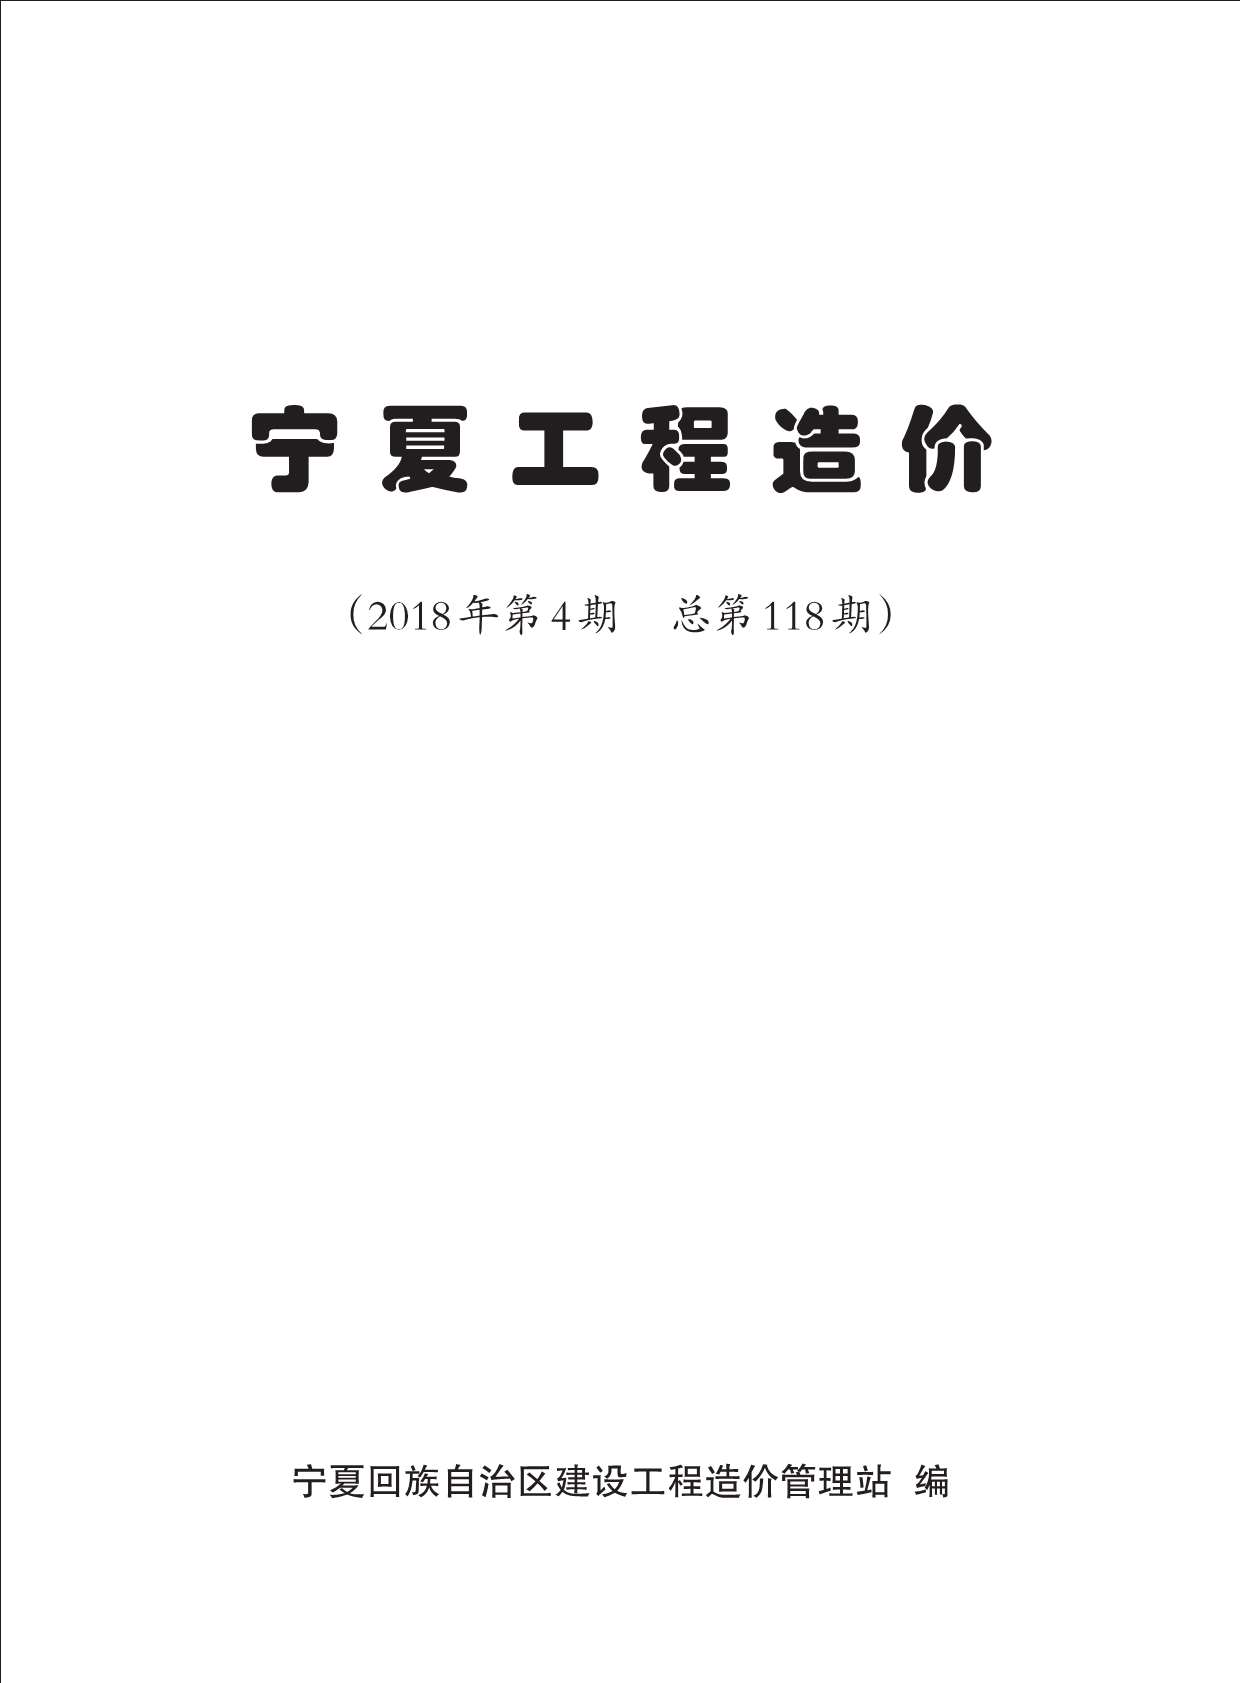 宁夏自治区2018年4月工程信息价_宁夏自治区信息价期刊PDF扫描件电子版